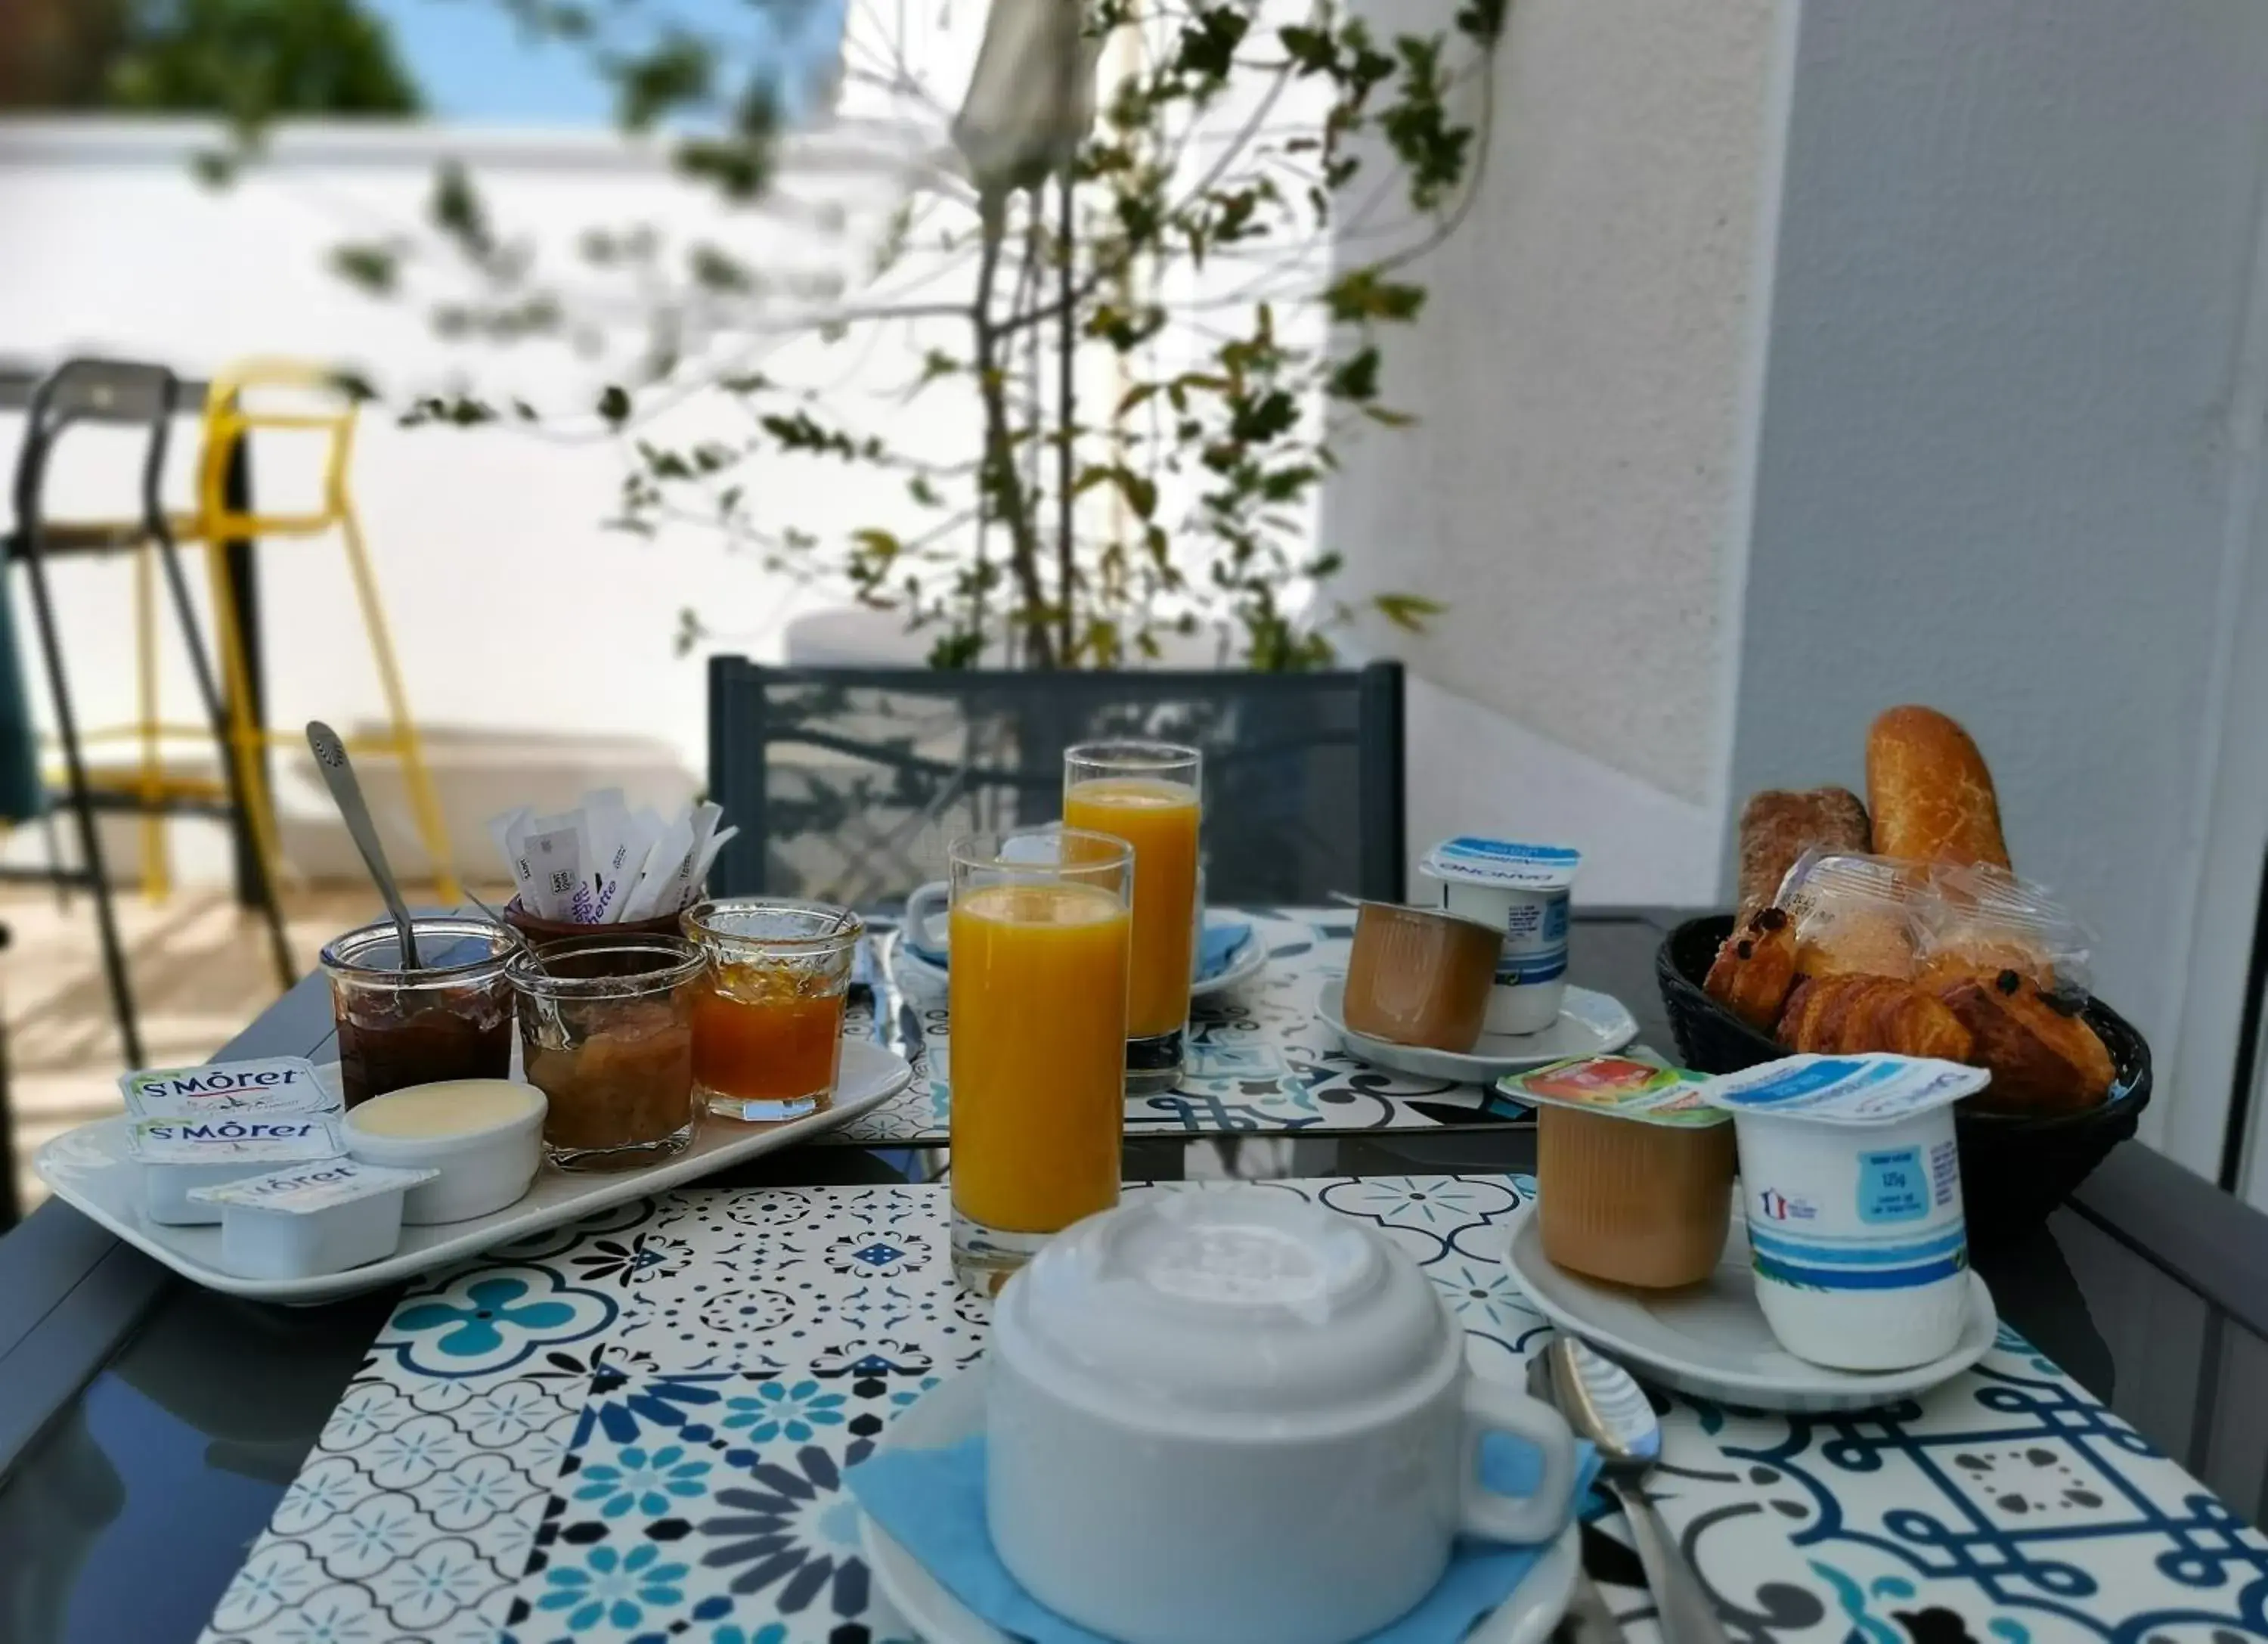 Breakfast in Hotel le Pasteur